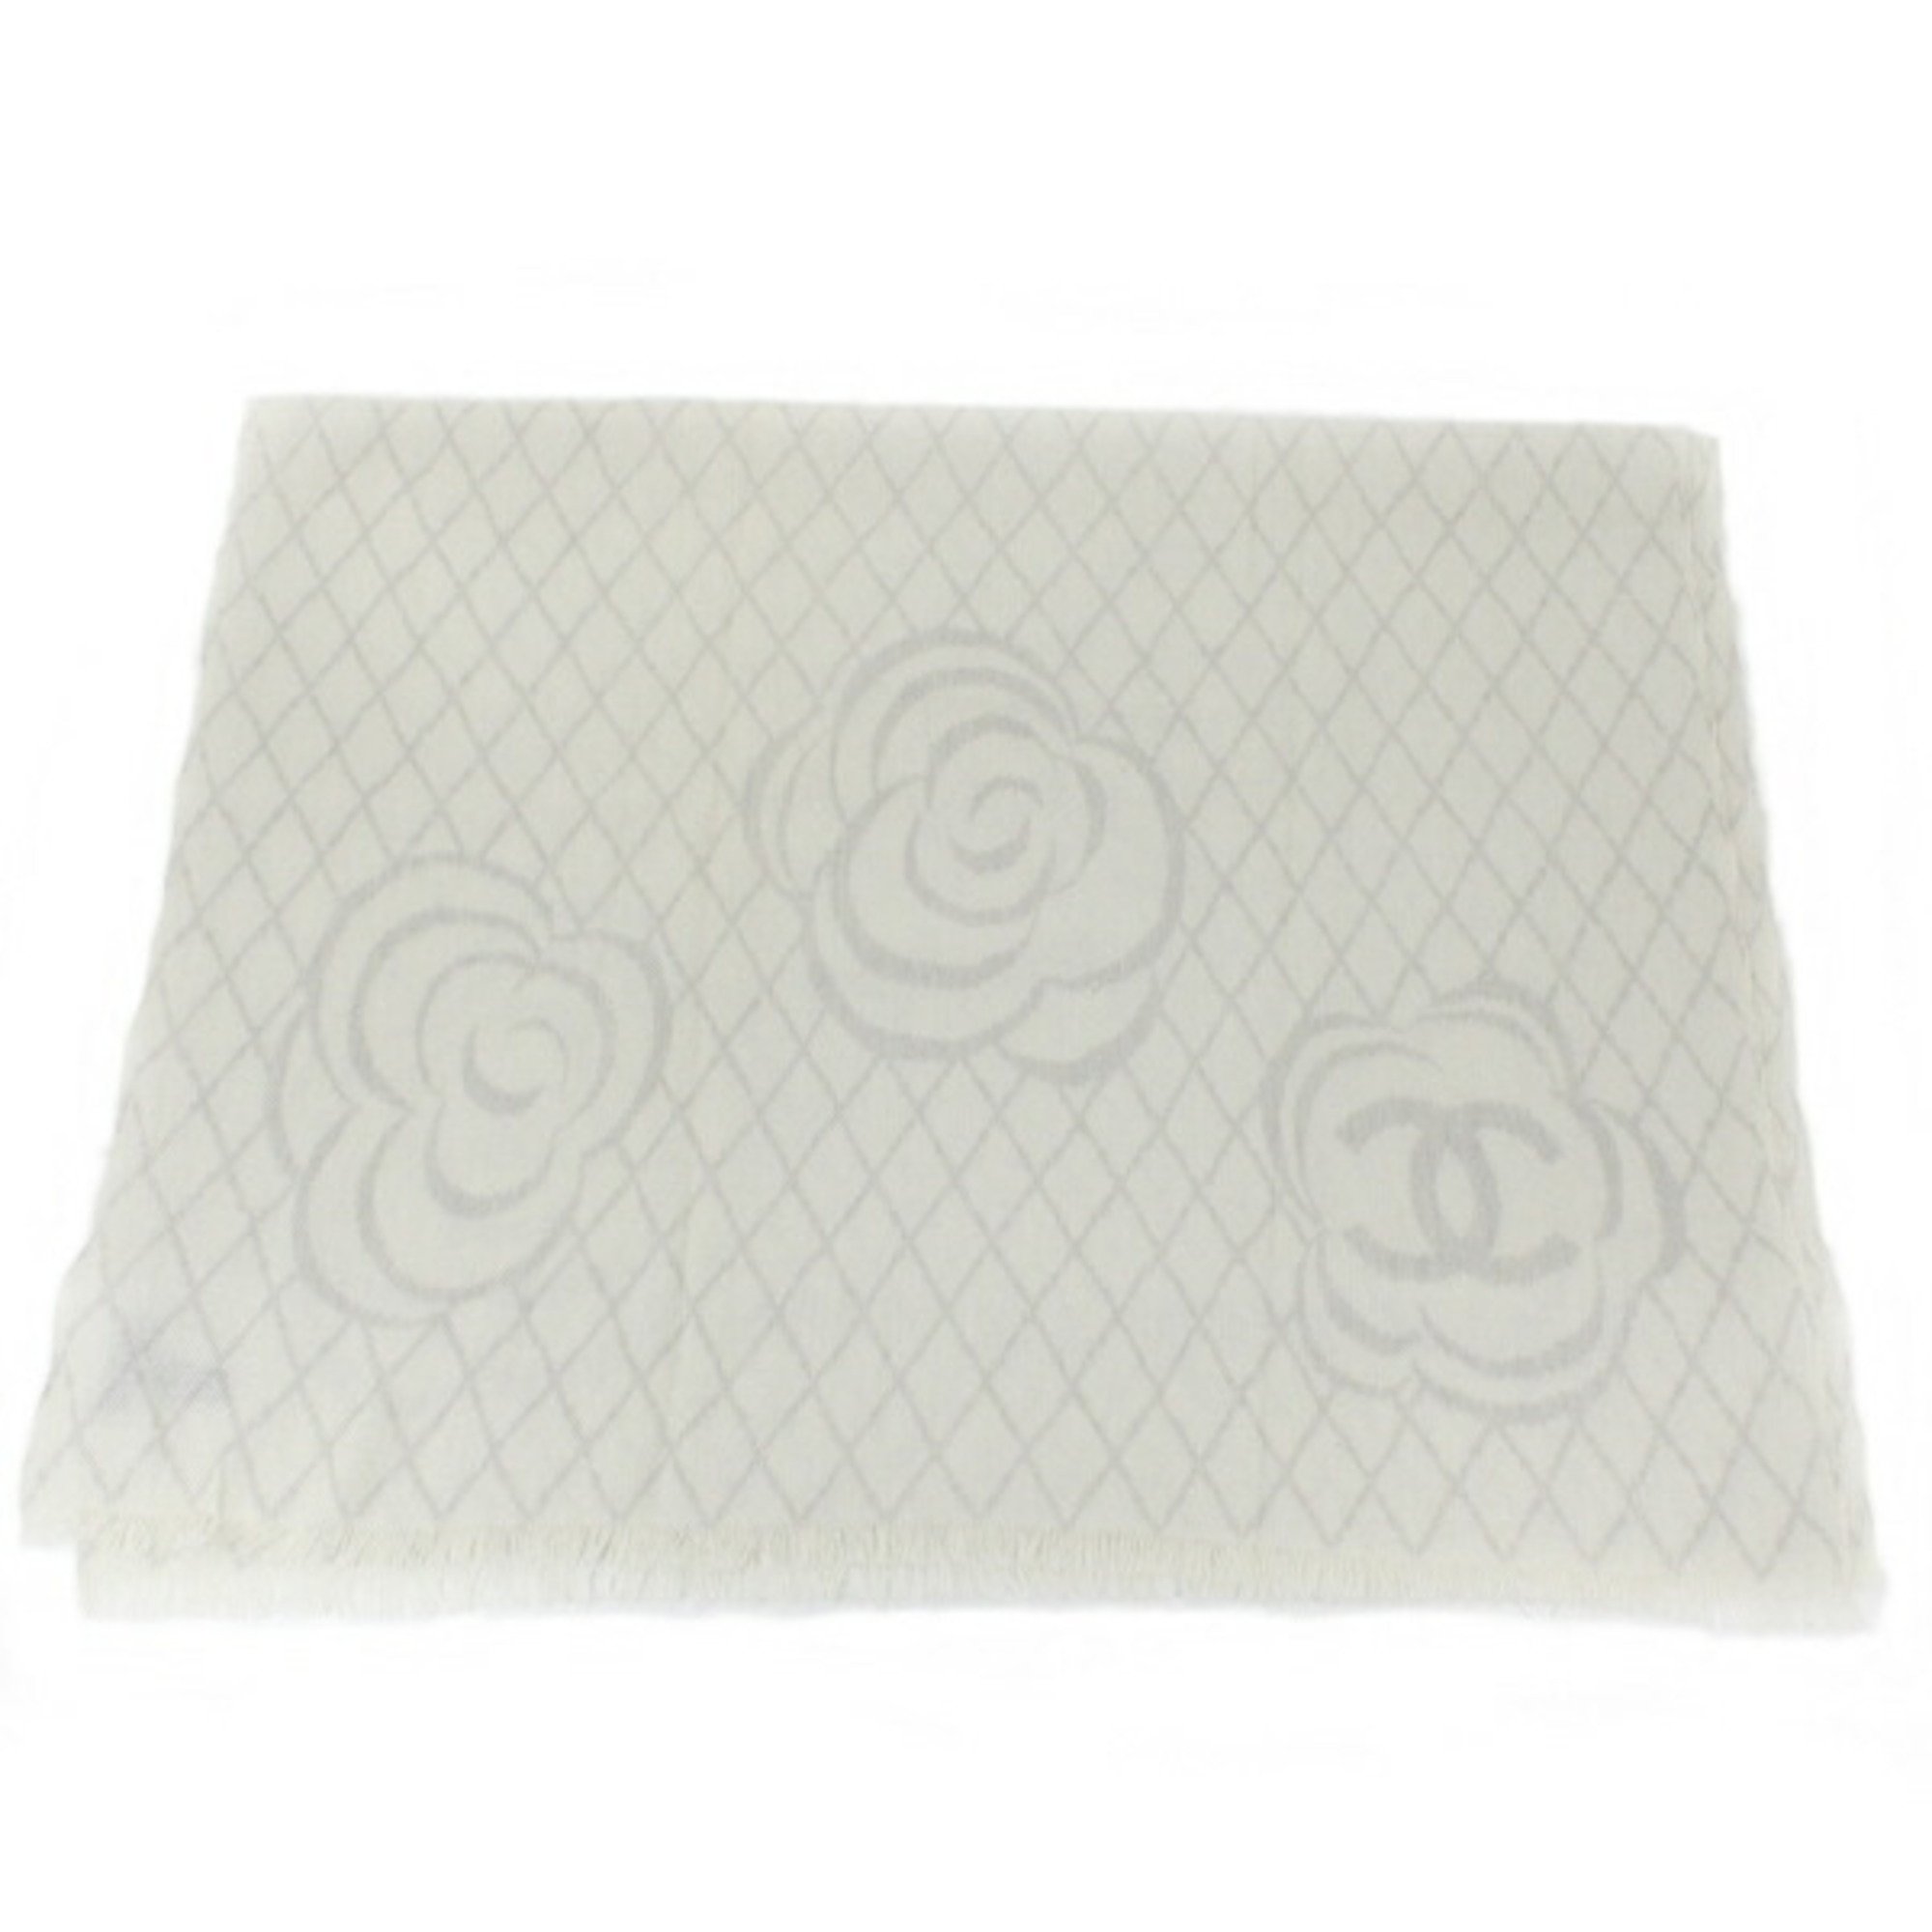 Chanel Shawl Stole Coco Mark Camellia Cashmere Silk Off-white x Gray 200cm Scarf Women's CHANEL T4762